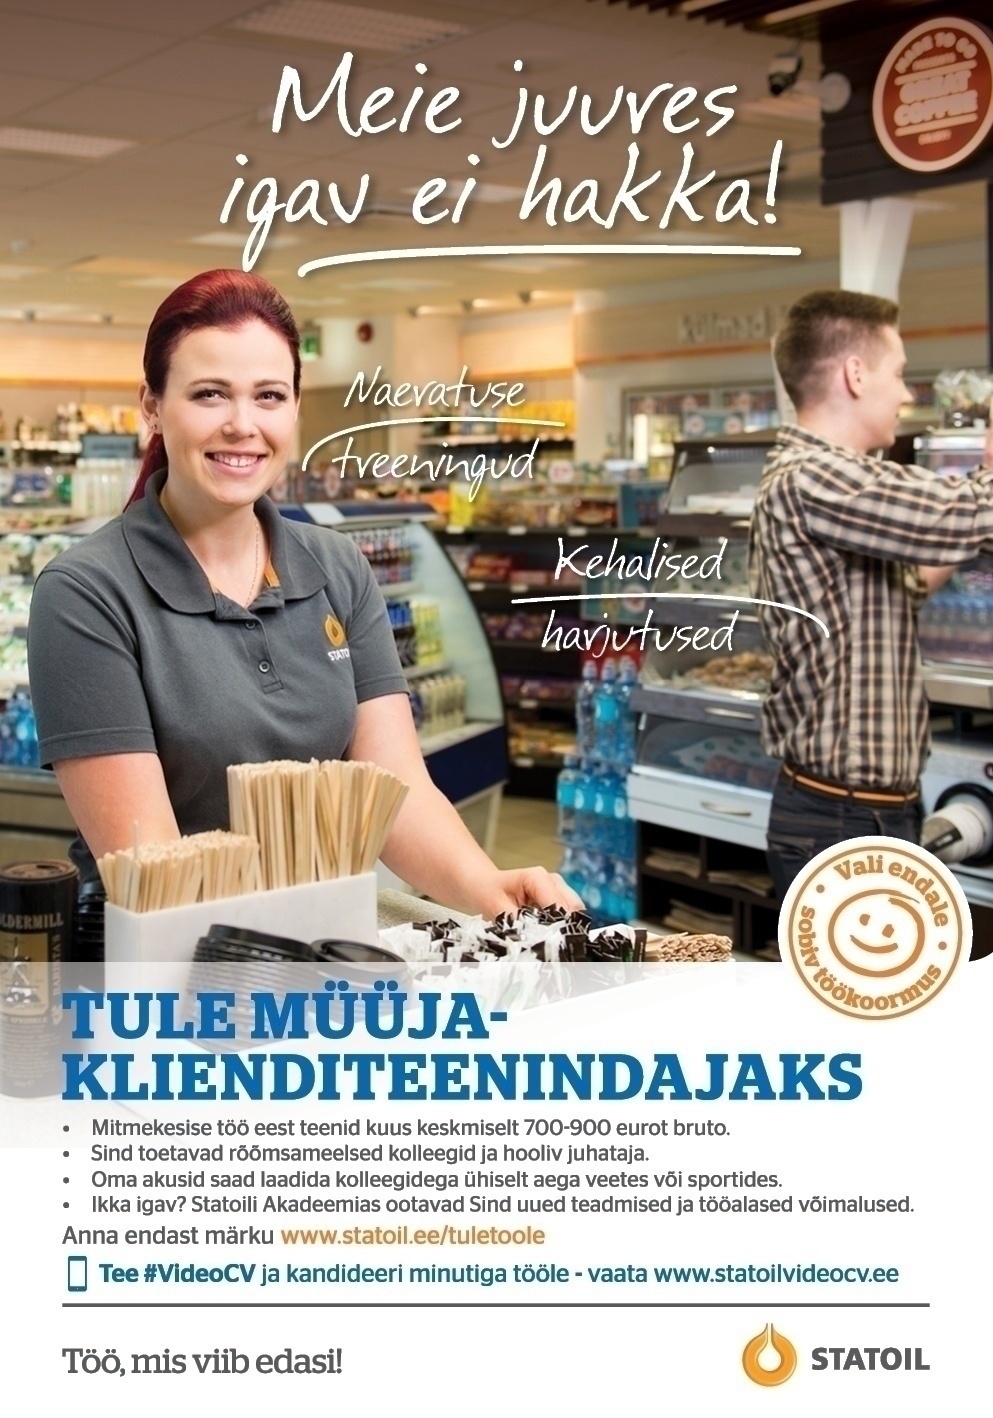 Circle K Eesti AS Müüja-klienditeenindaja Rakvere Väljavahi teenindusjaama